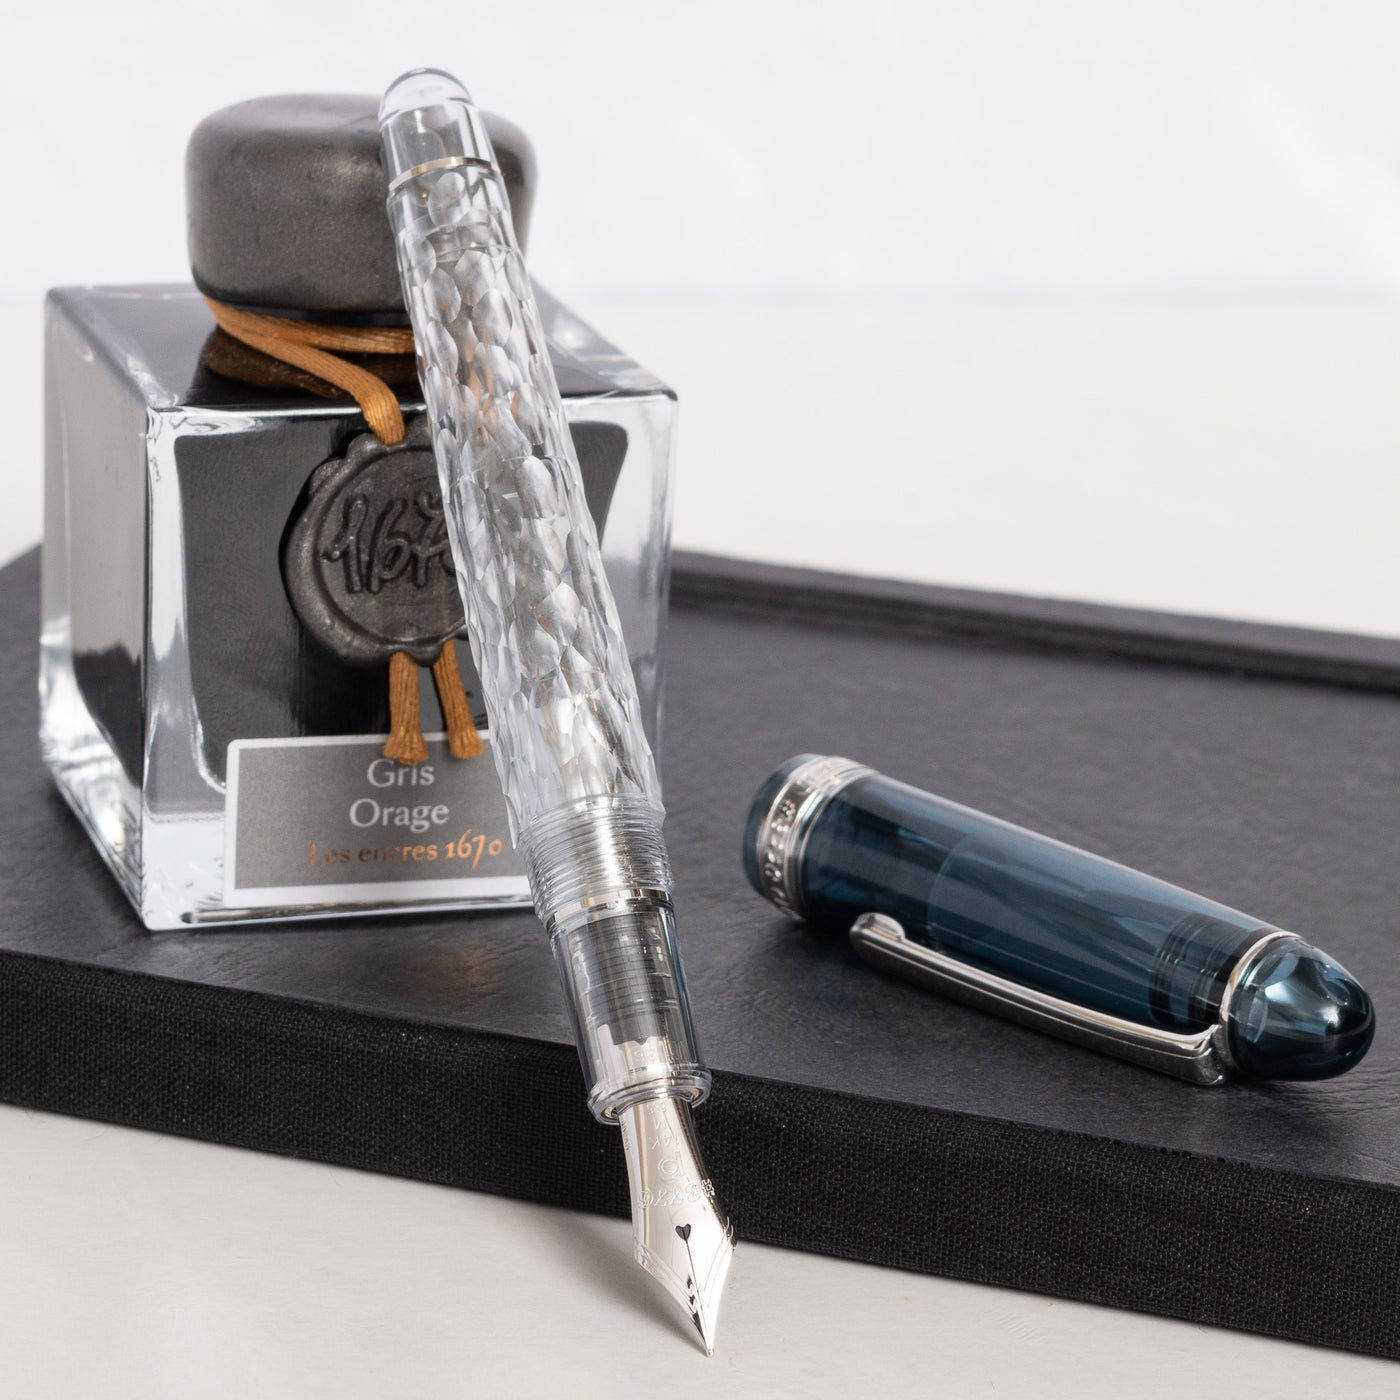 Platinum 3776 Century Limited Edition Uroko Gumo Fountain Pen uncapped